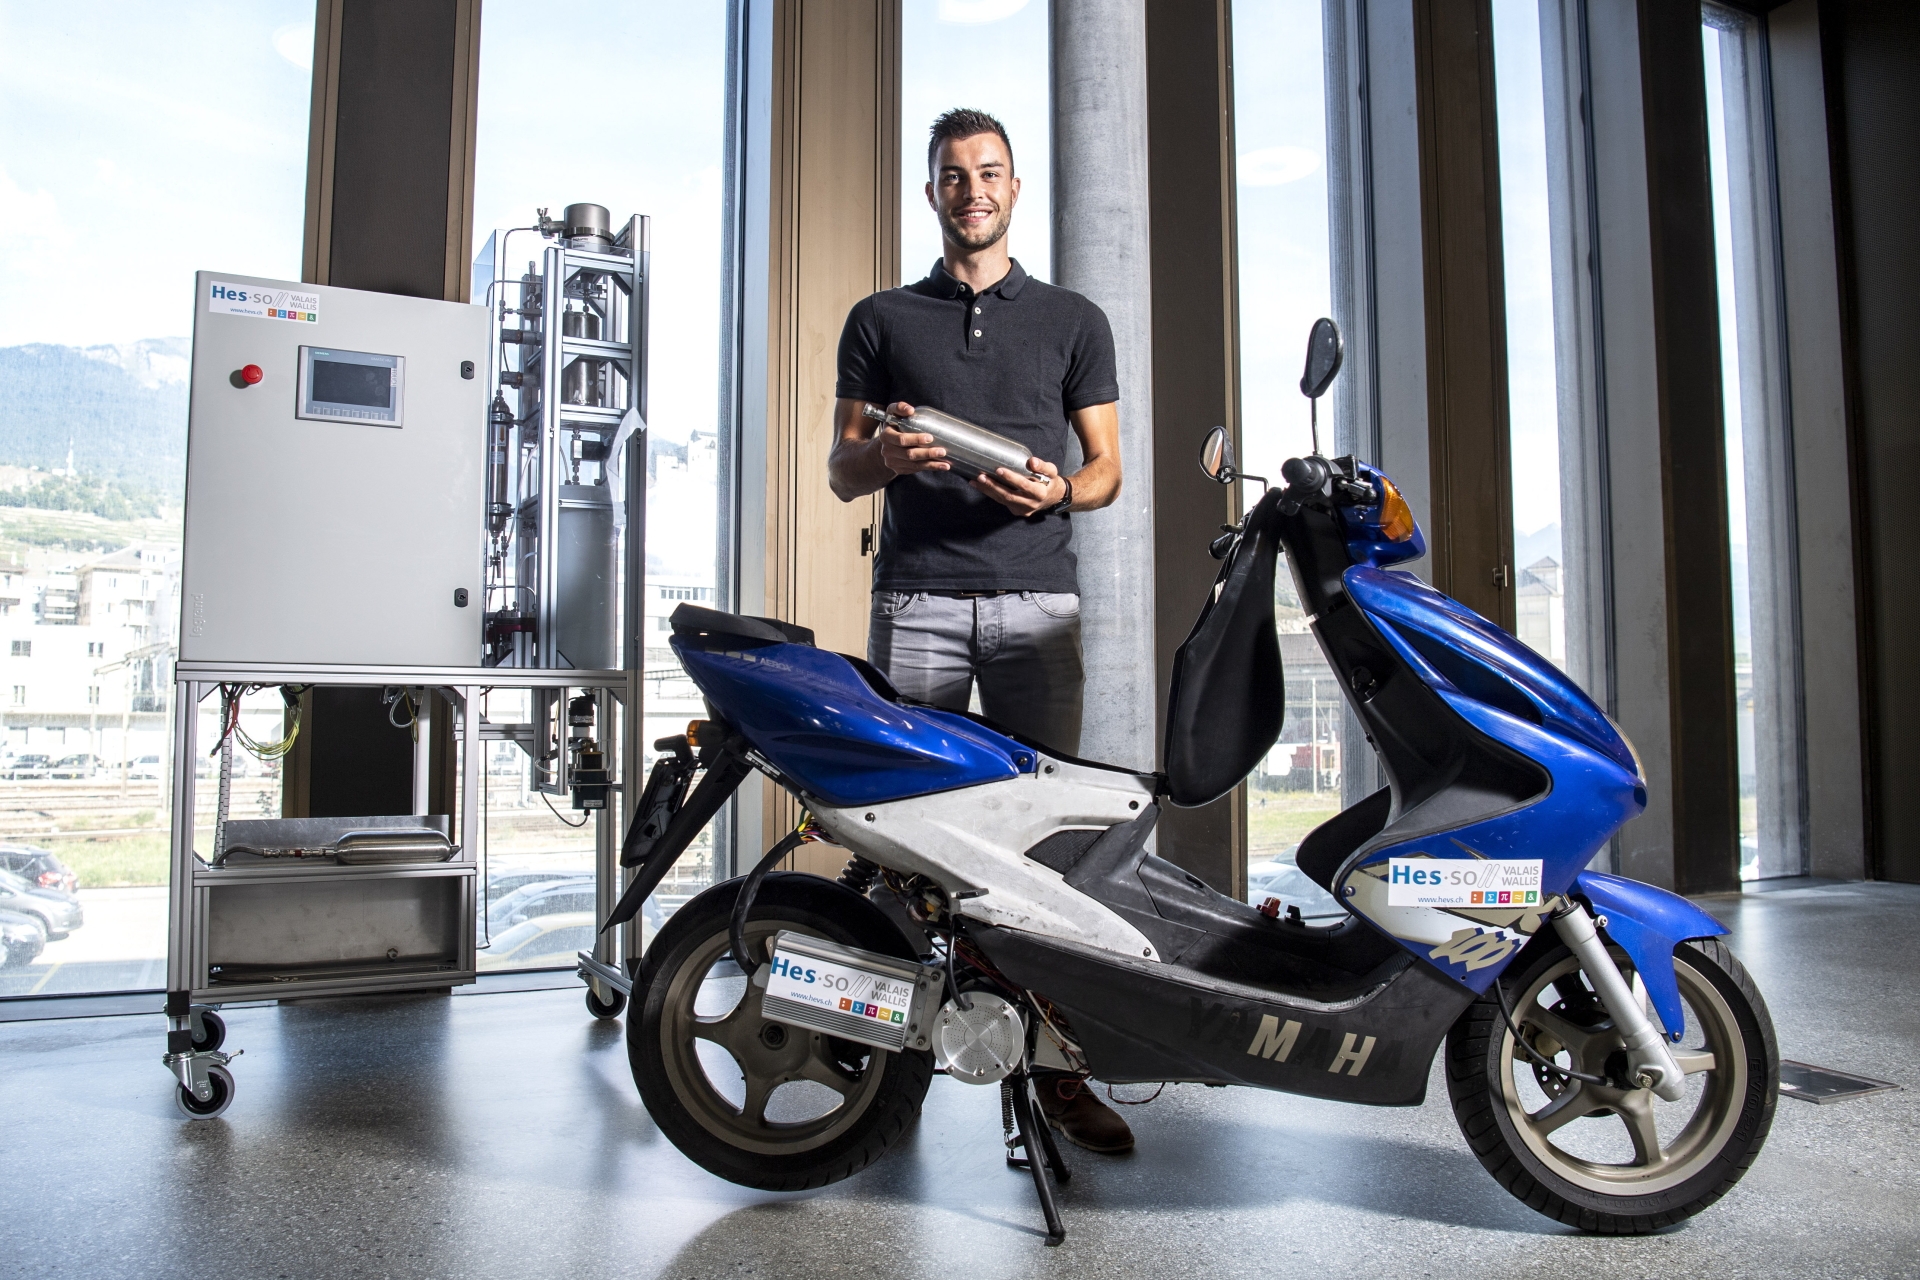 Sion - 7 septembre 2021 - Dans le cadre de son travail de master à la HES-SO, Julien Udry a développé un scooter fonctionnant à l'hydrogène. On évoque son projet et ses potentiels débouchés en termes de mobilité verte dans le canton.